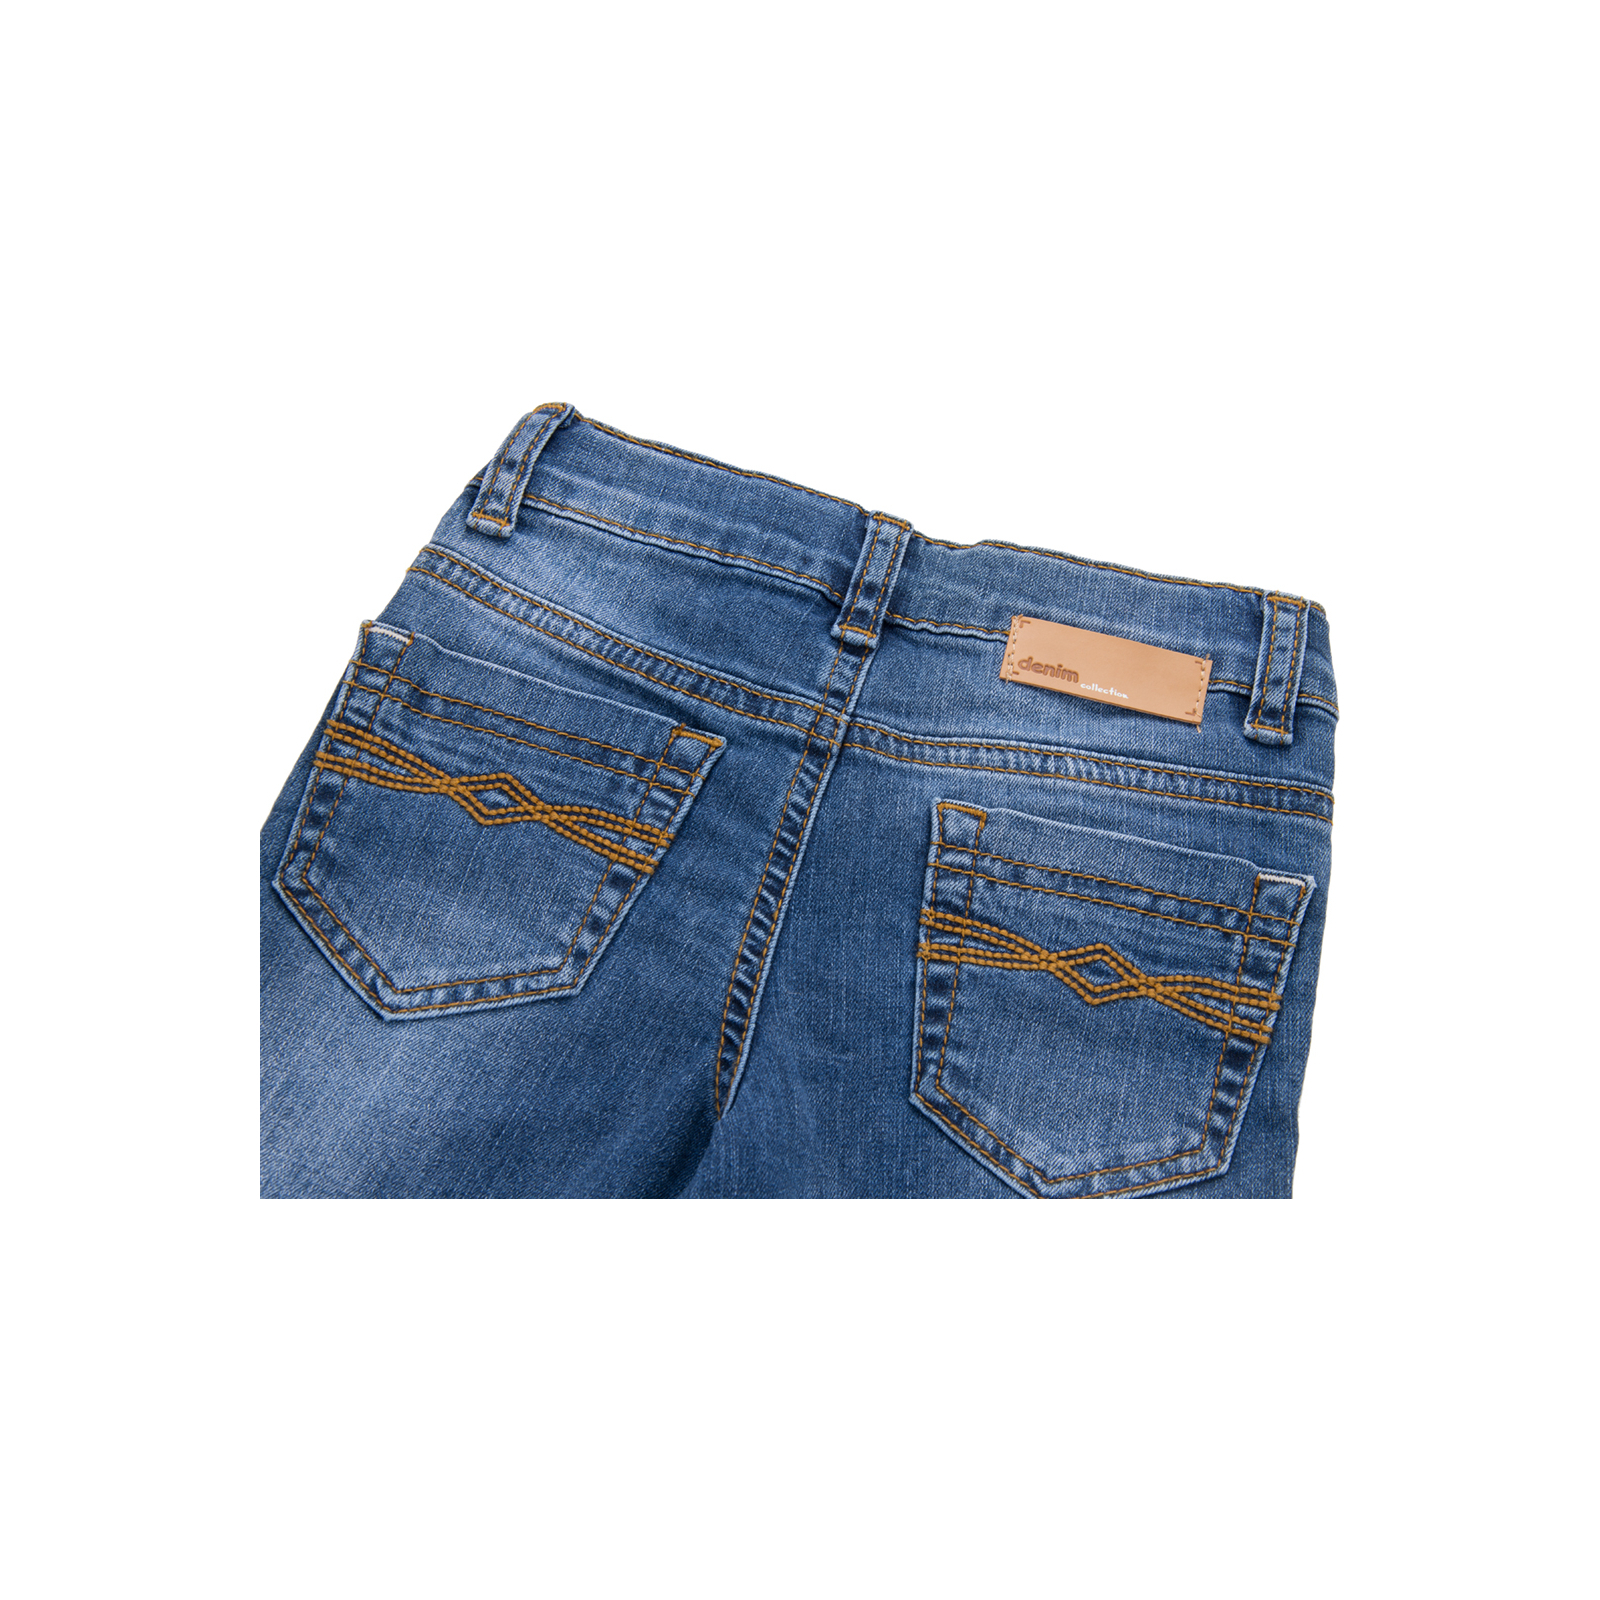 Джинсы Breeze синие (15YECPAN371-86B-jeans) изображение 4